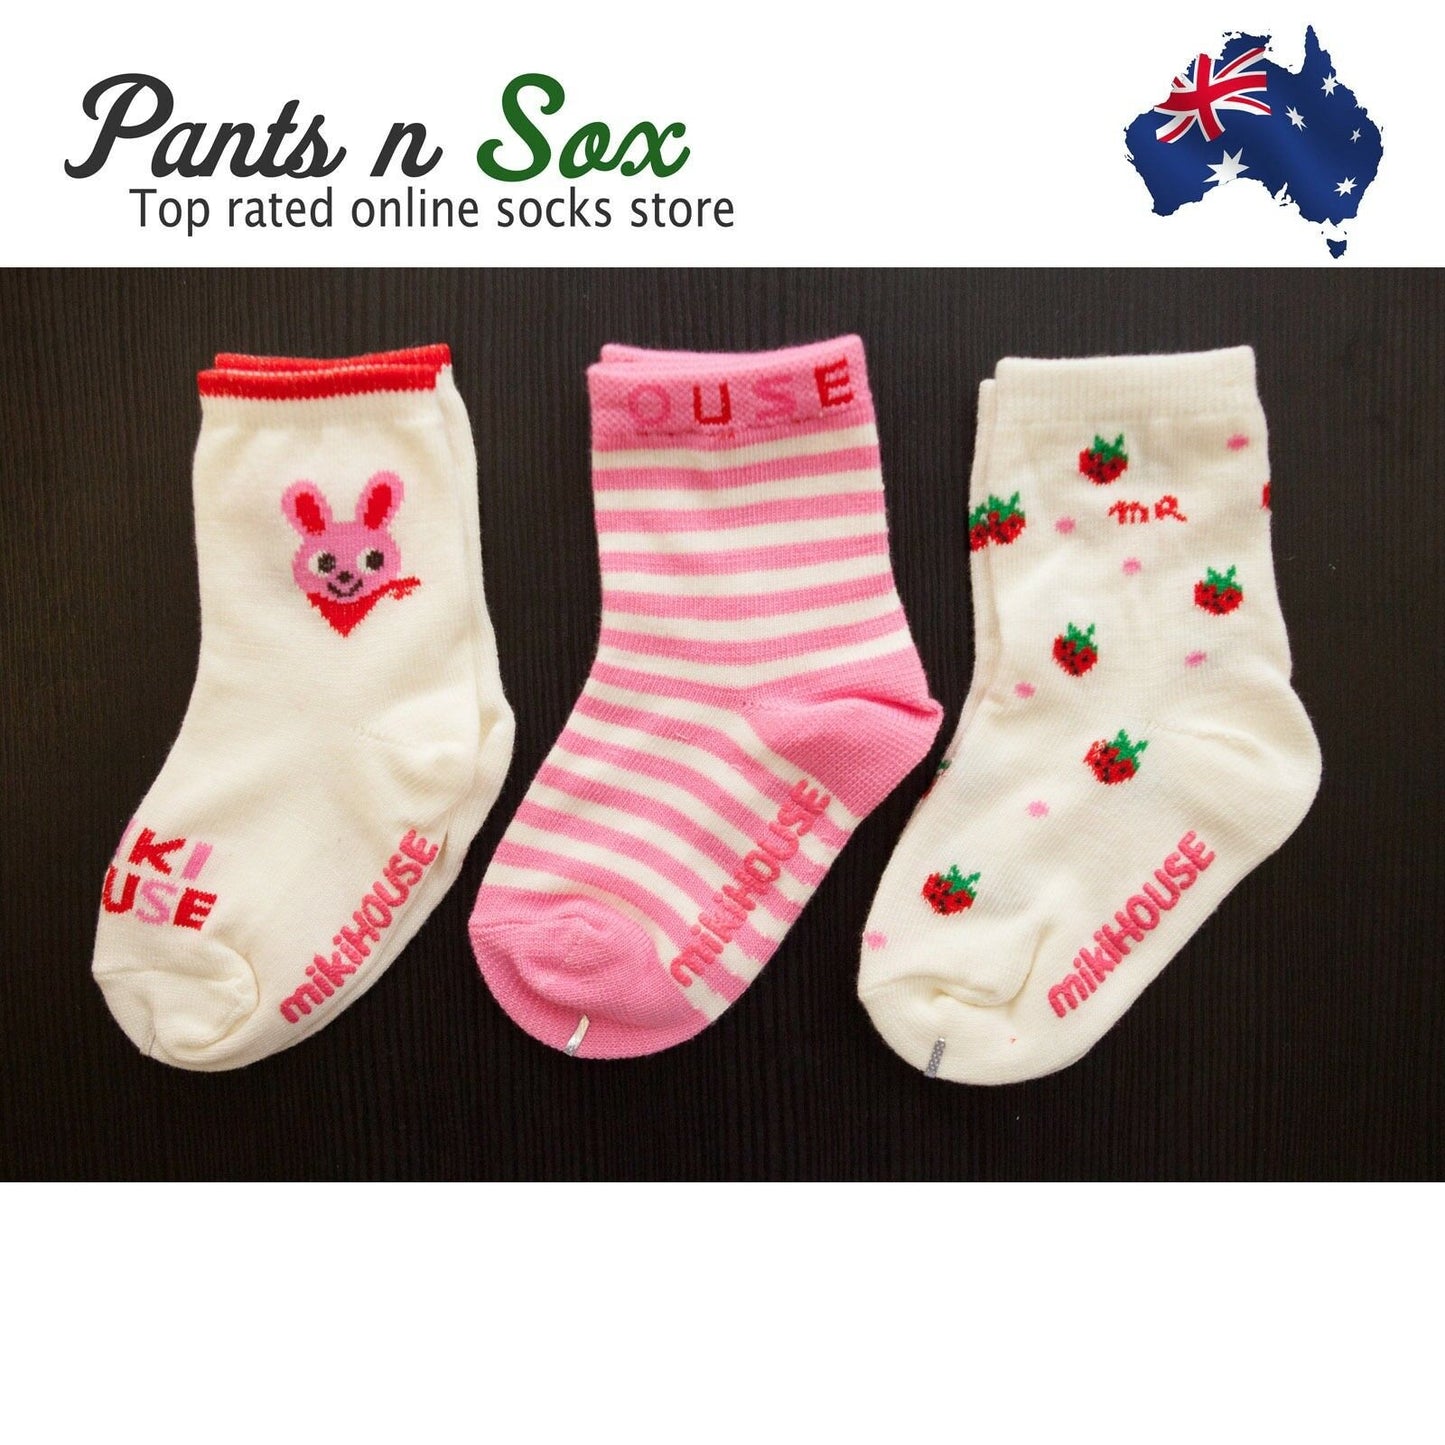 Kids Girls Socks Size 1 to 2 Year Cotton Spandex New Wholesale Gift - Pantsnsox